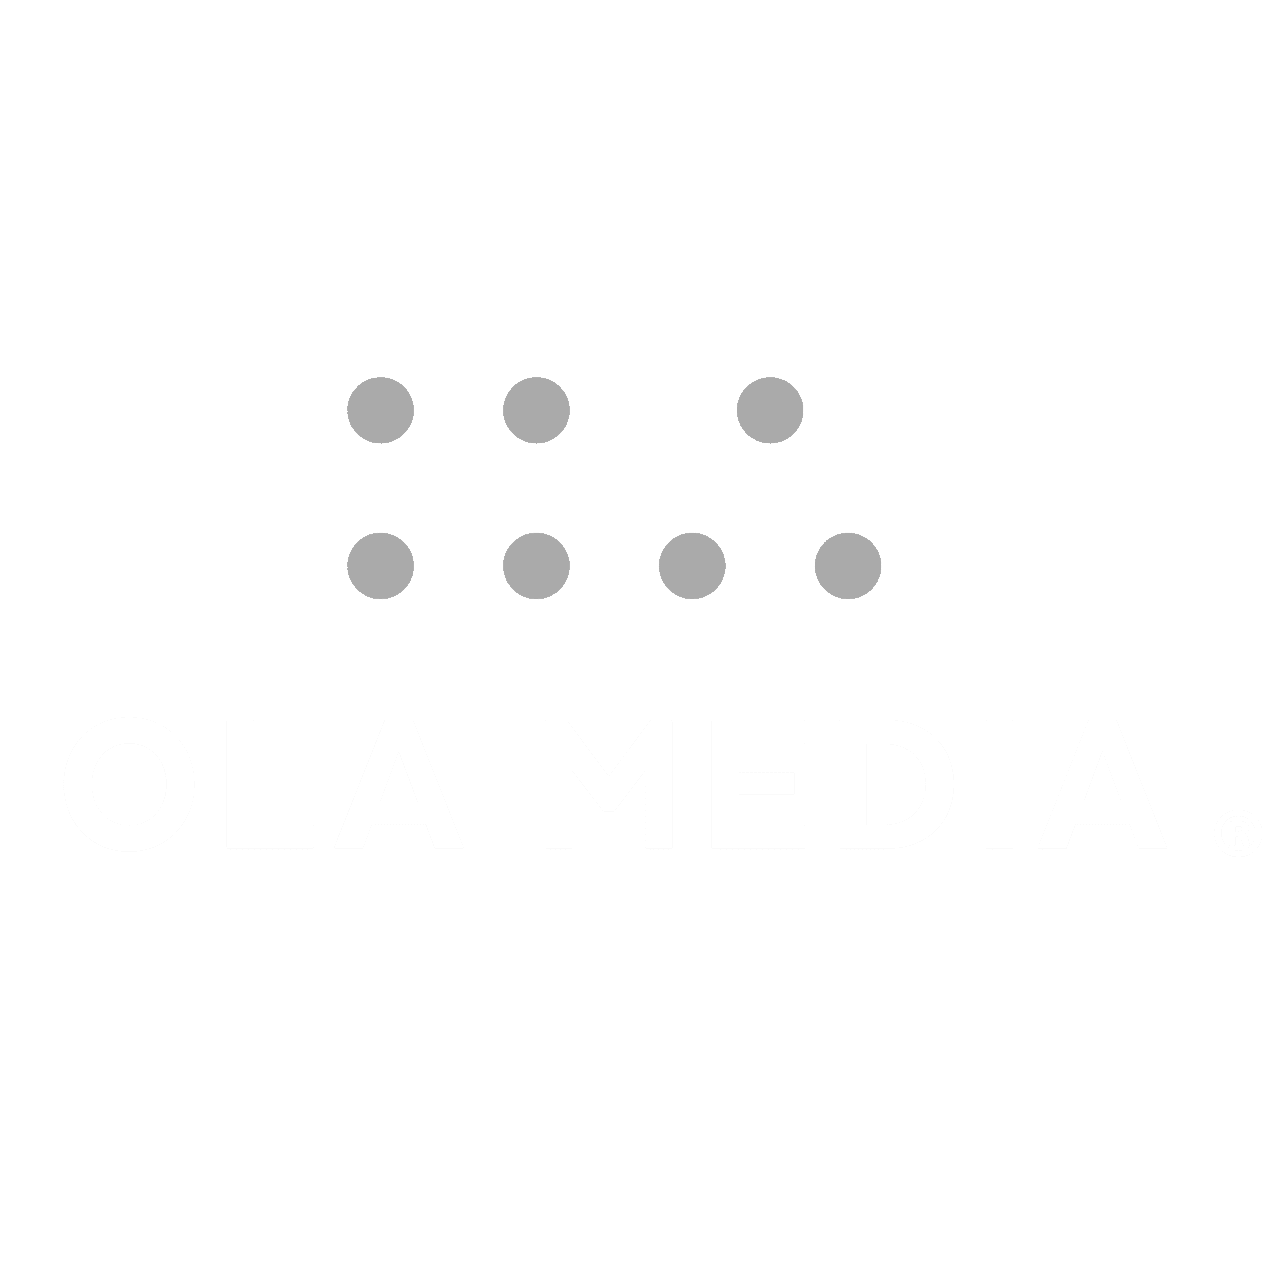 Ola Media 标志 - 代理商和品牌